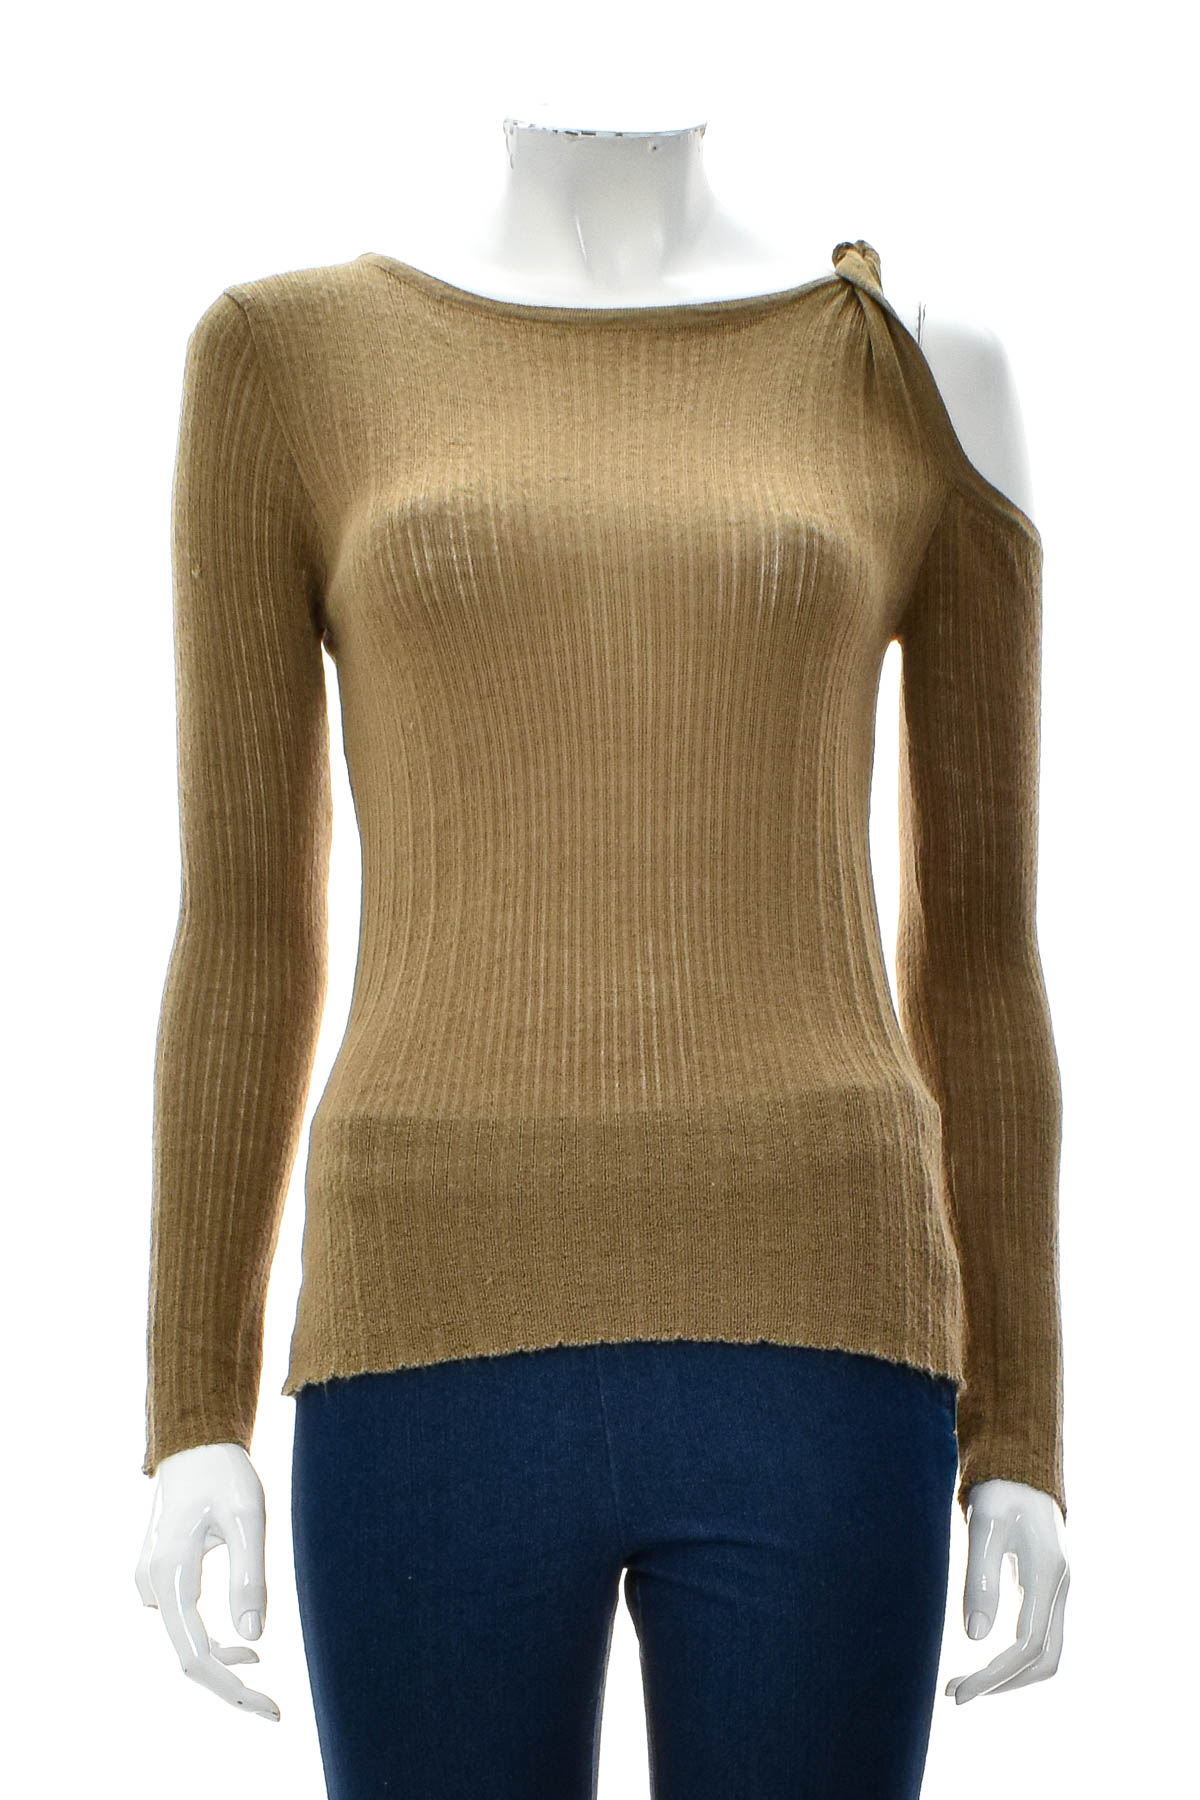 Women's sweater - Seven7 - 0